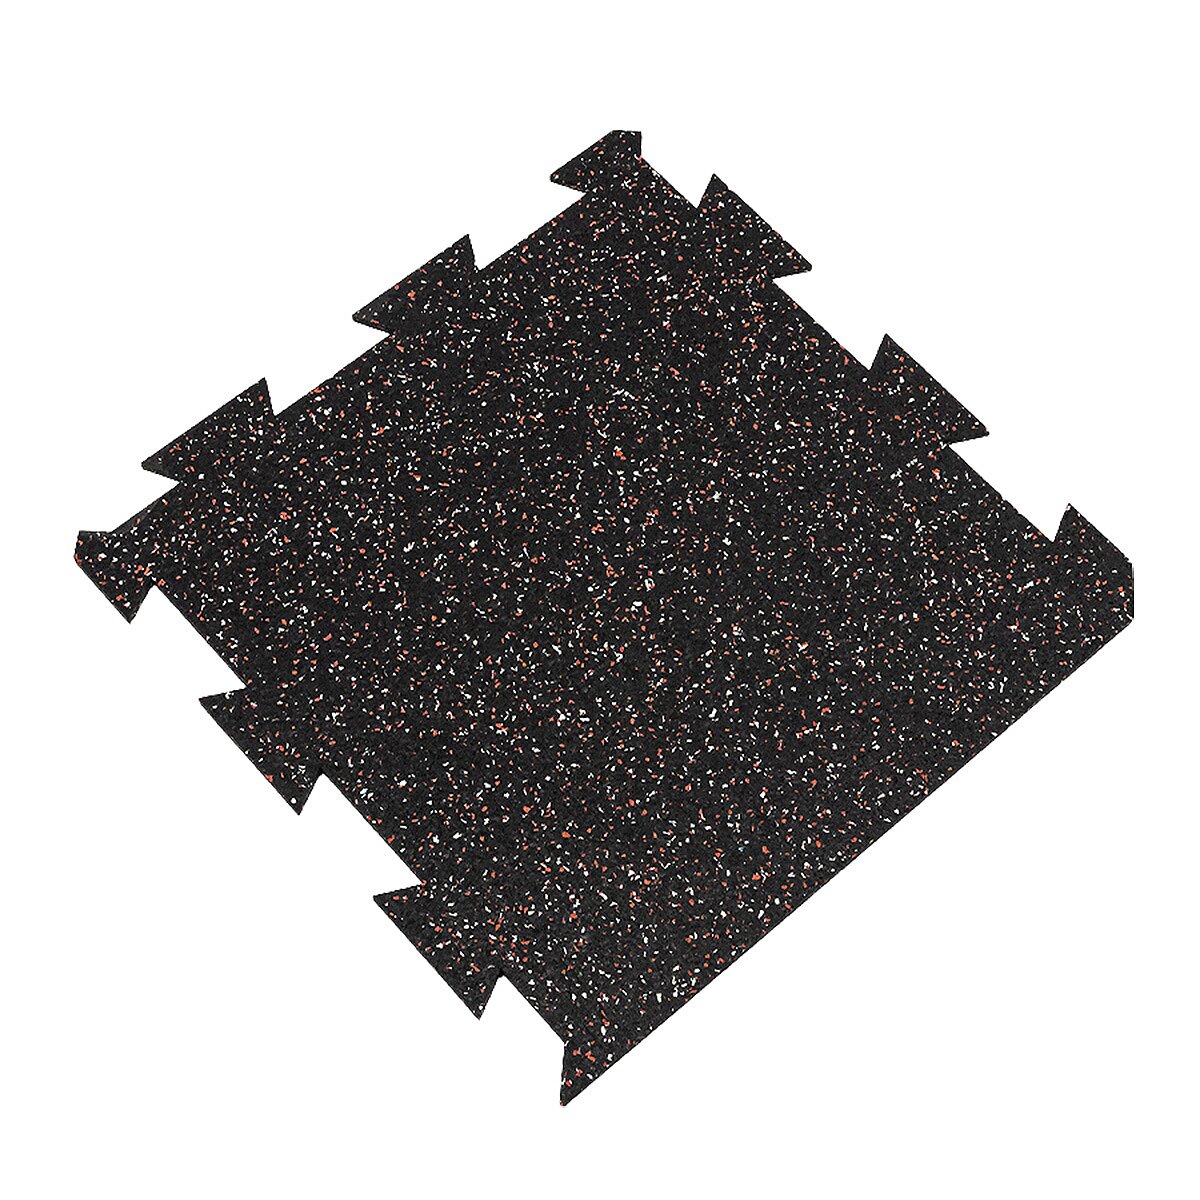 Černo-bílo-červená podlahová guma FLOMA FitFlo SF1050 - délka 50 cm, šířka 50 cm, výška 0,8 cm